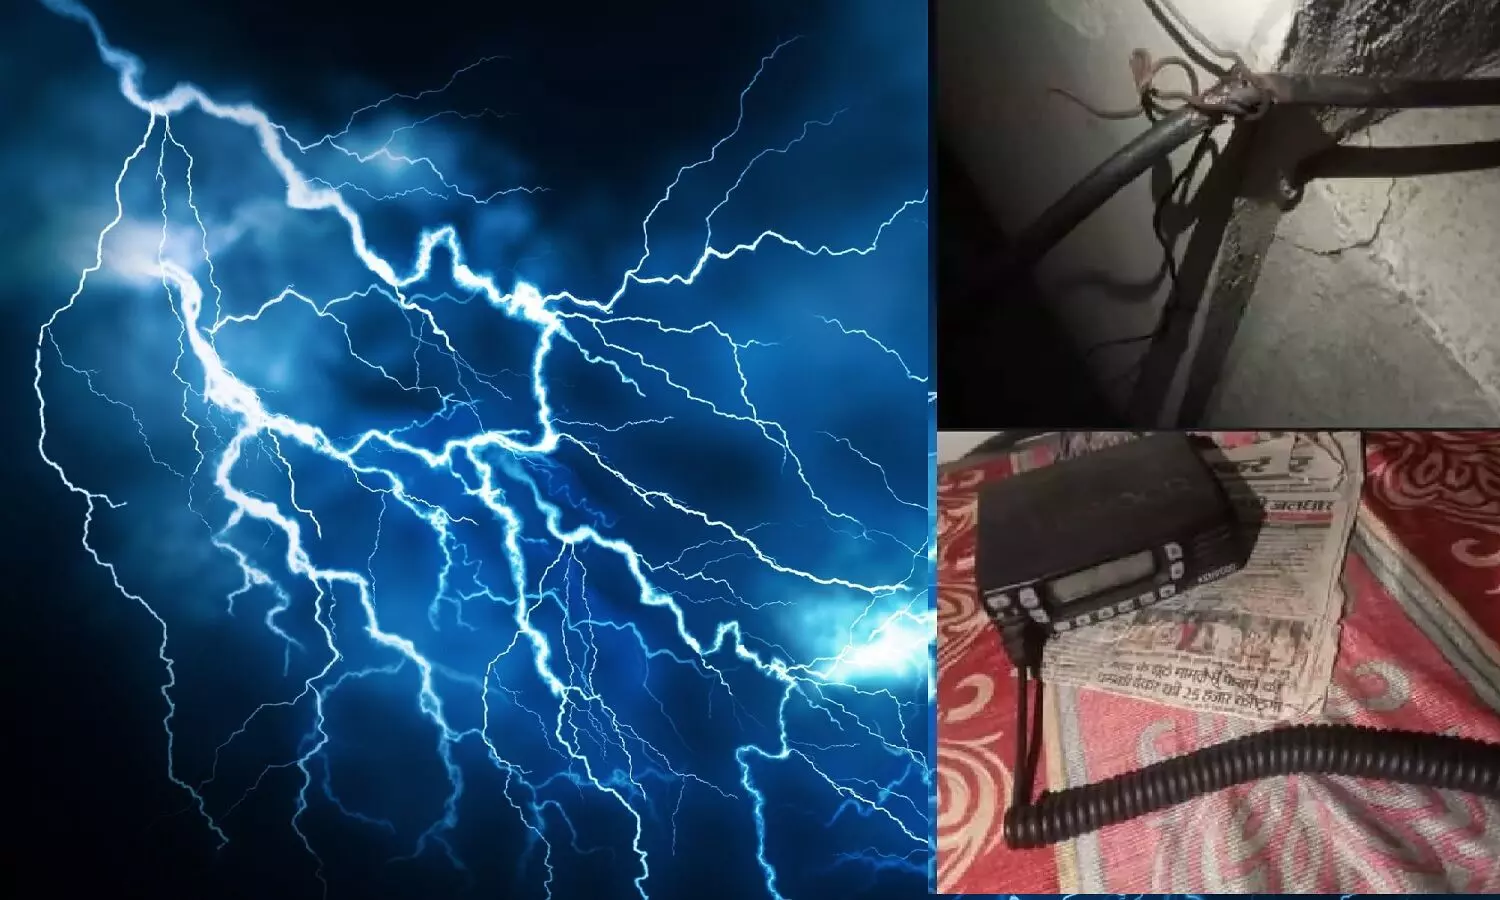 एमपी के सीधी में आकाशीय बिजली का कहर, थाने में गिरी गाज, कम्प्यूटर सहित इलेक्ट्रानिक उपकरण हुए खराब